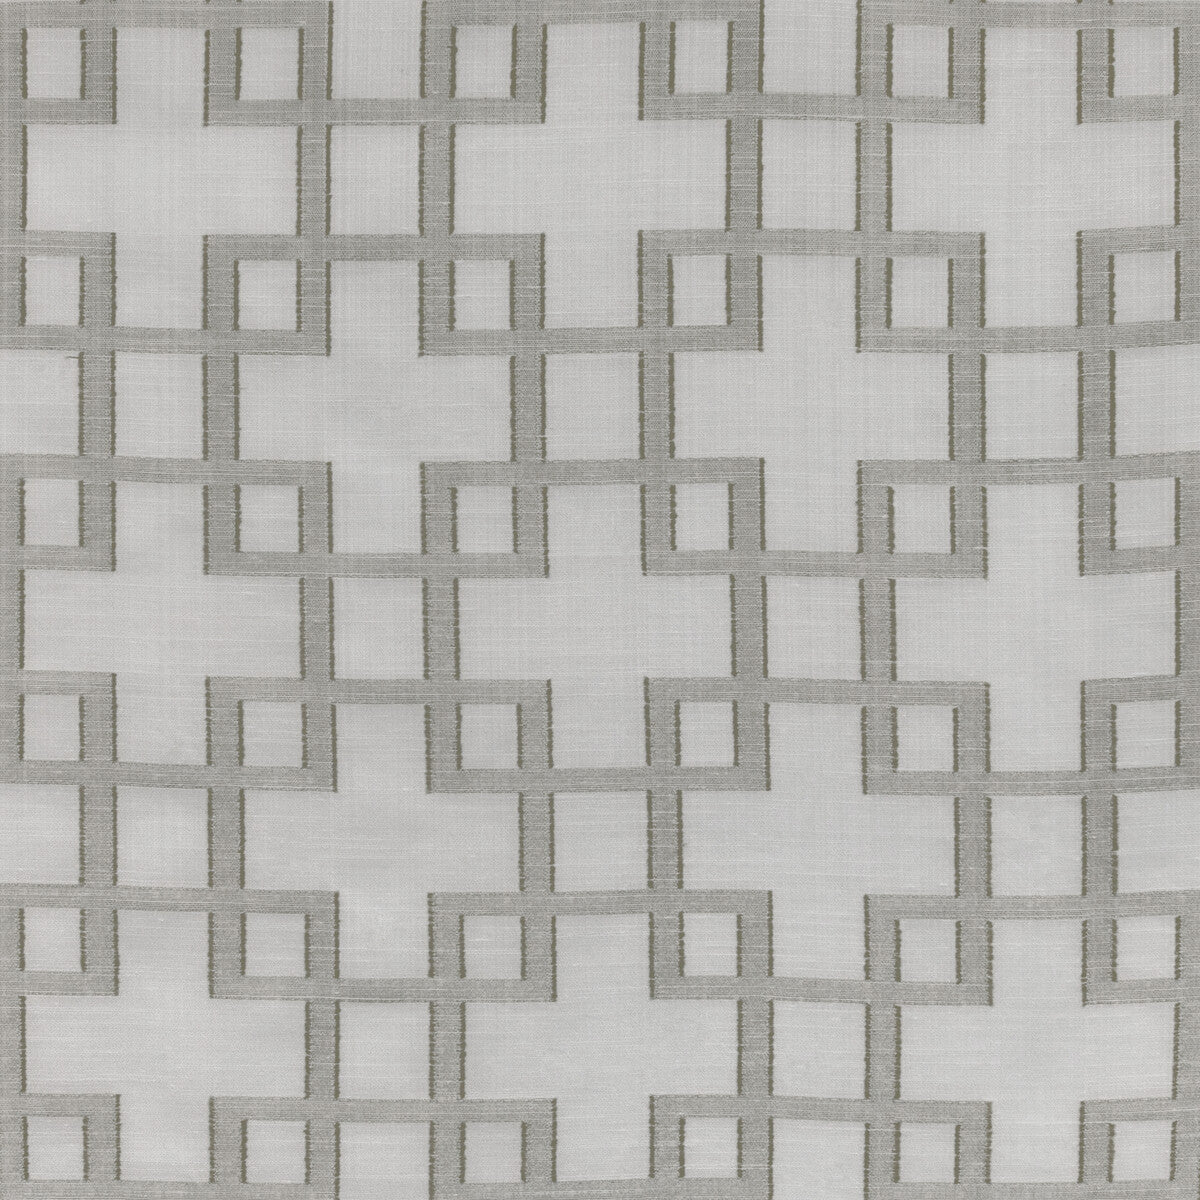 Kravet Basics fabric in 4494-11 color - pattern 4494.11.0 - by Kravet Basics